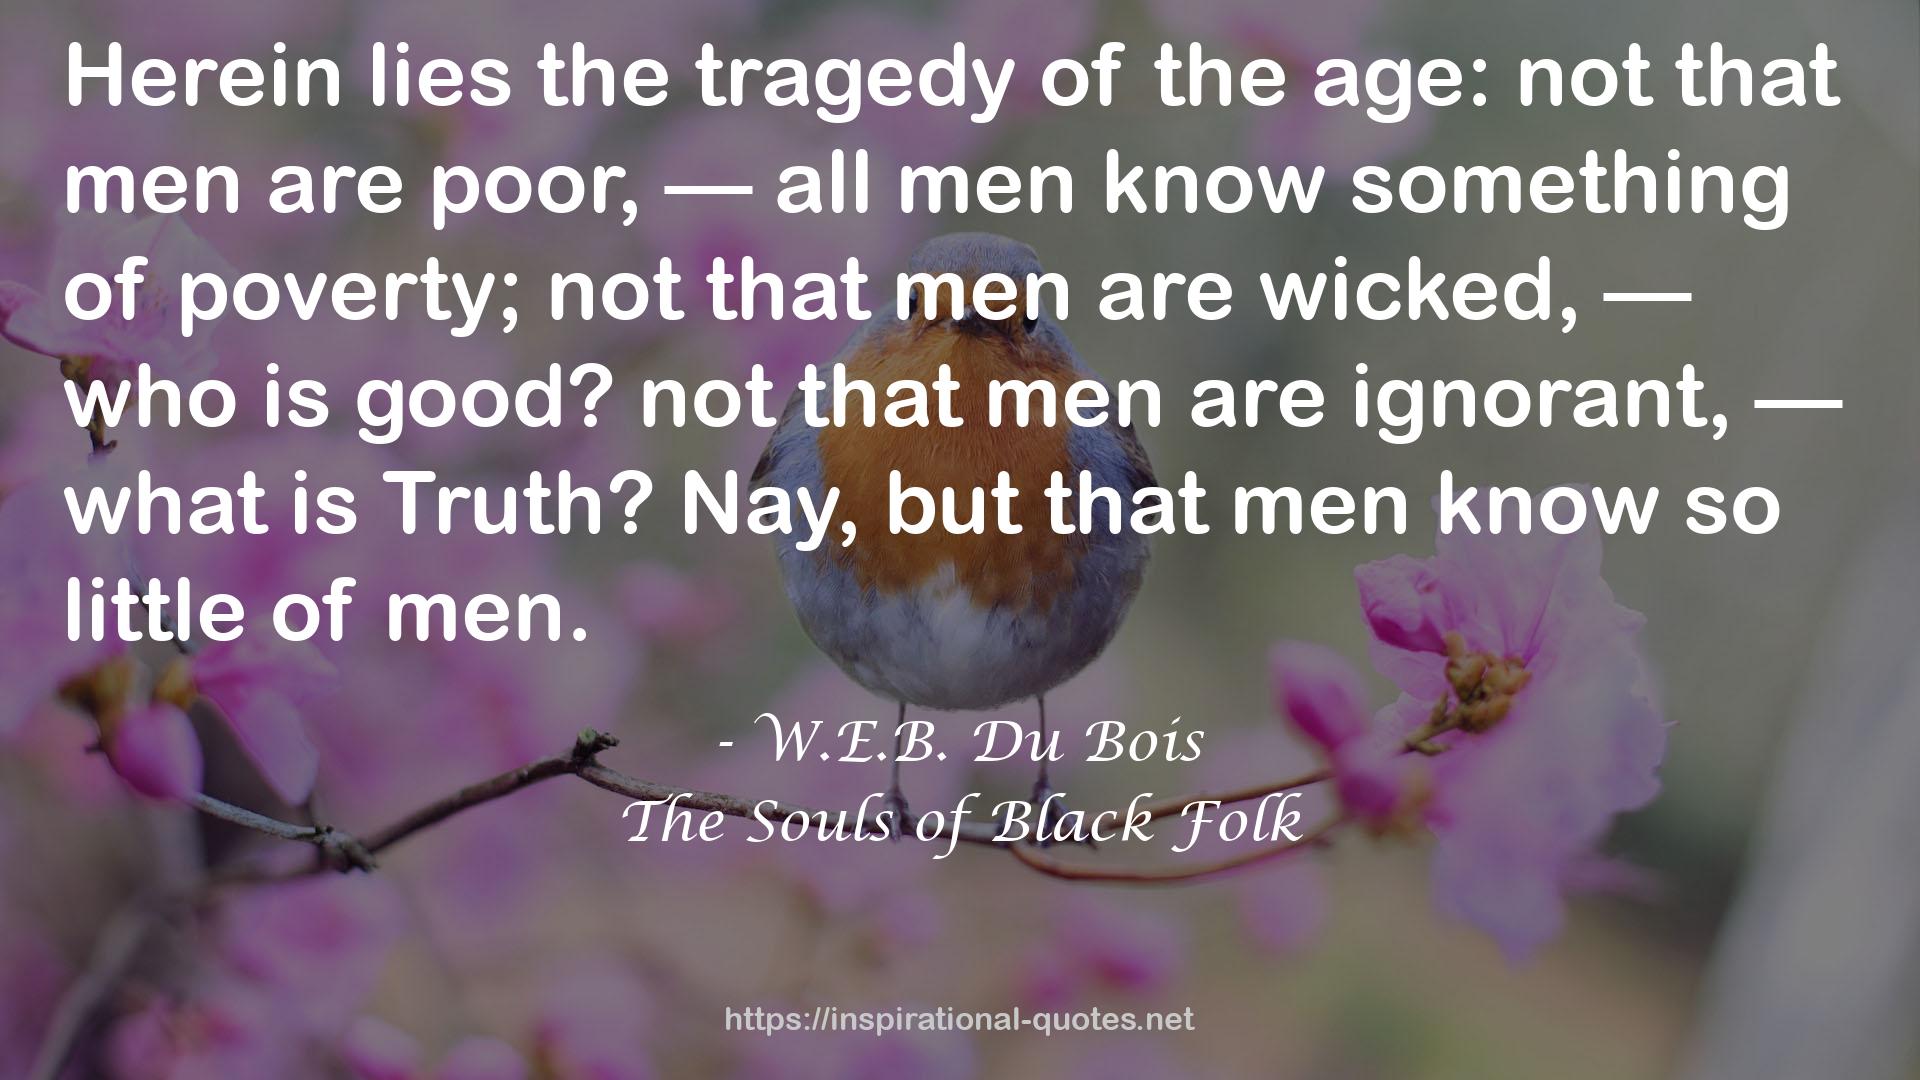 W.E.B. Du Bois QUOTES